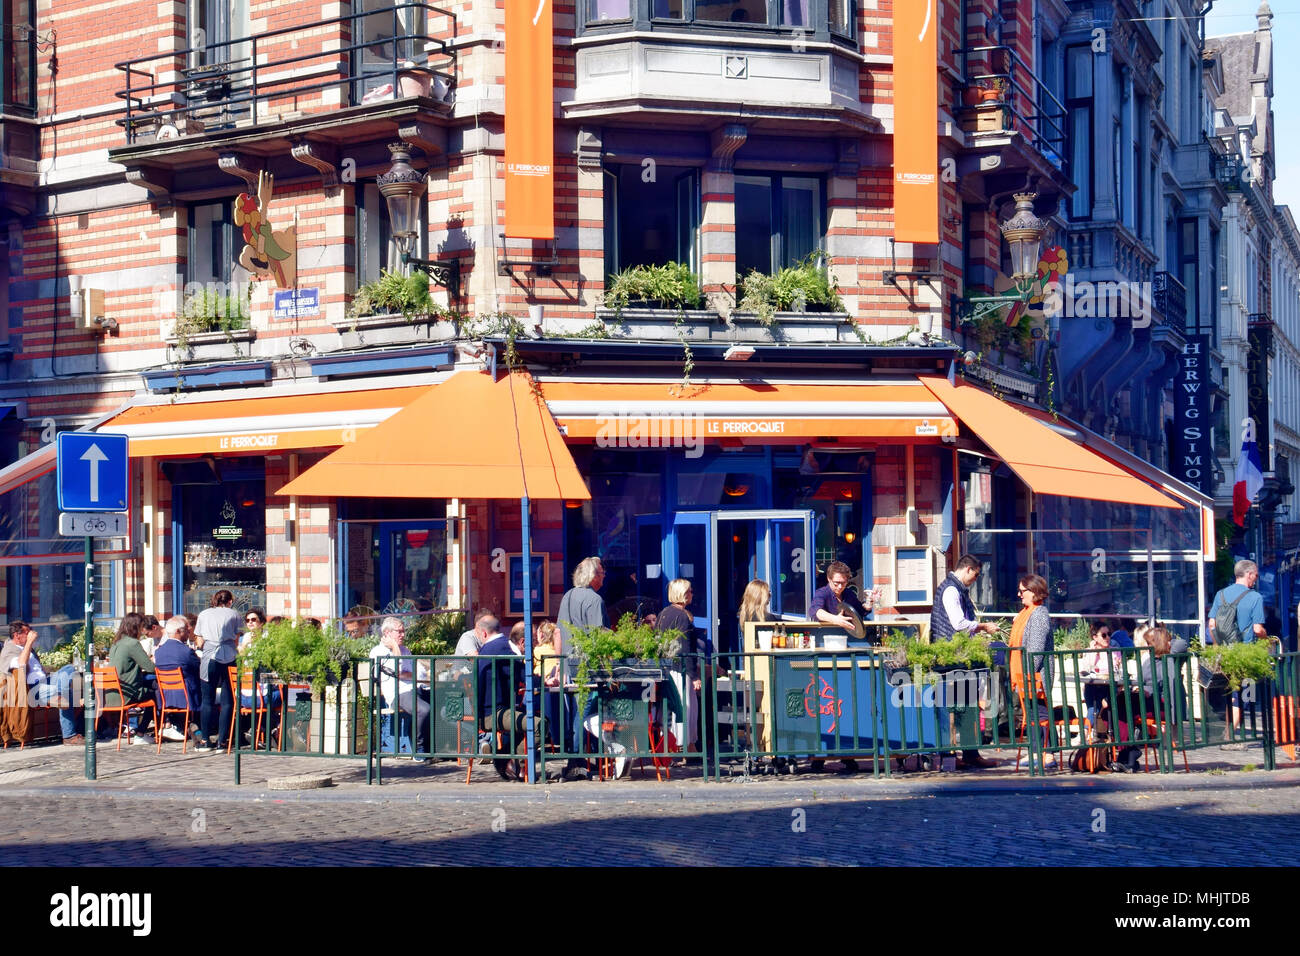 Le Perroquet restaurant at the corner of Rue Watteeu in Brussels, Belgium Stock Photo